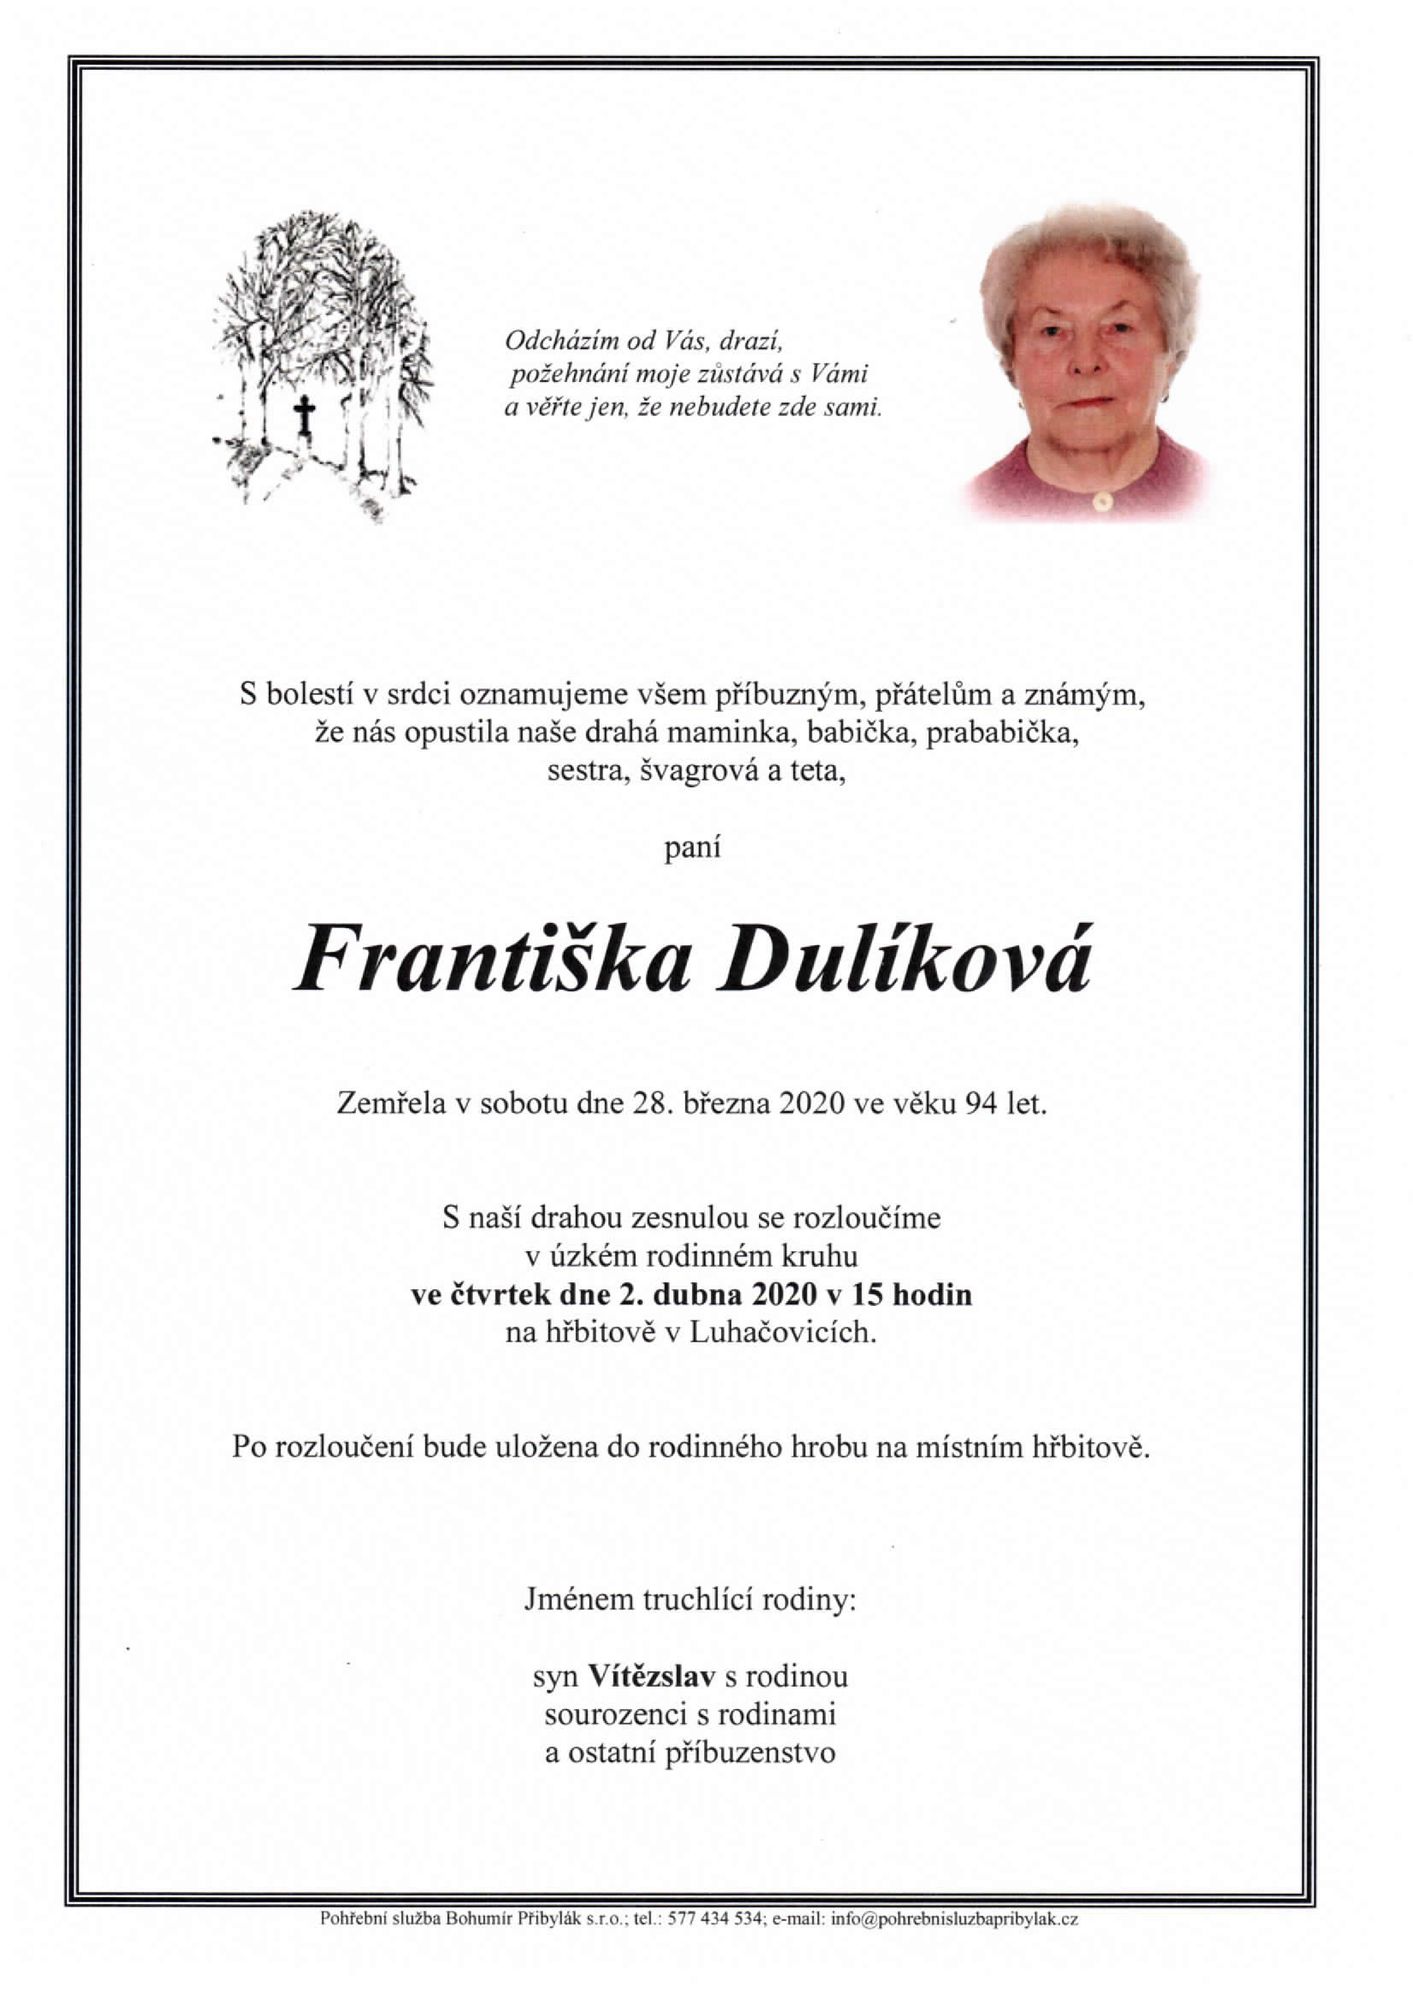 Františka Dulíková